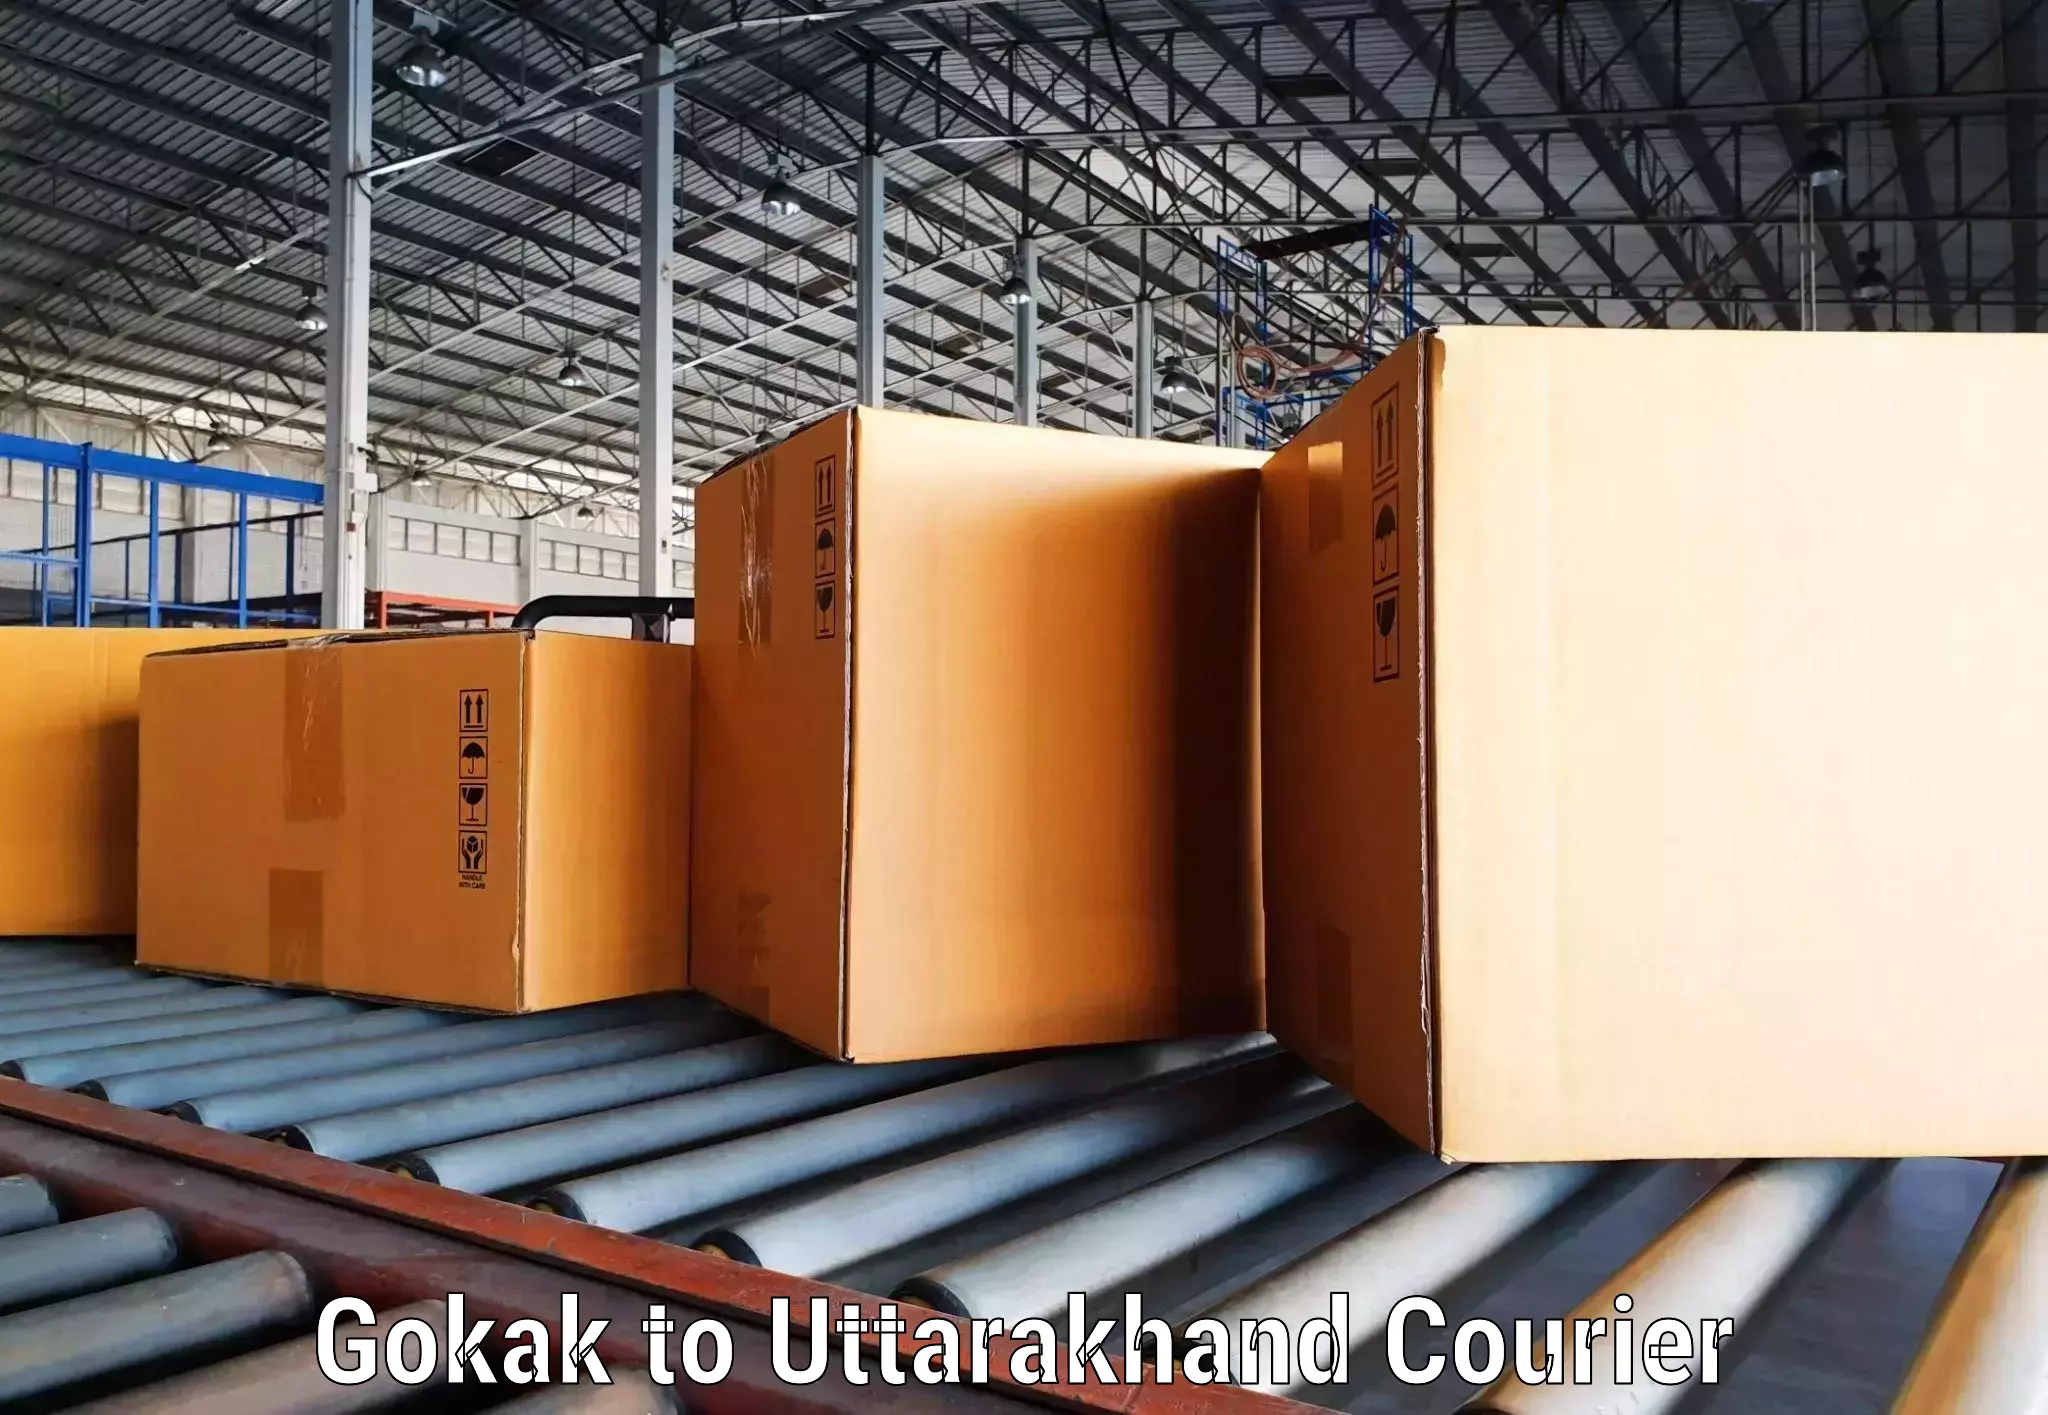 Reliable courier service Gokak to Rudraprayag